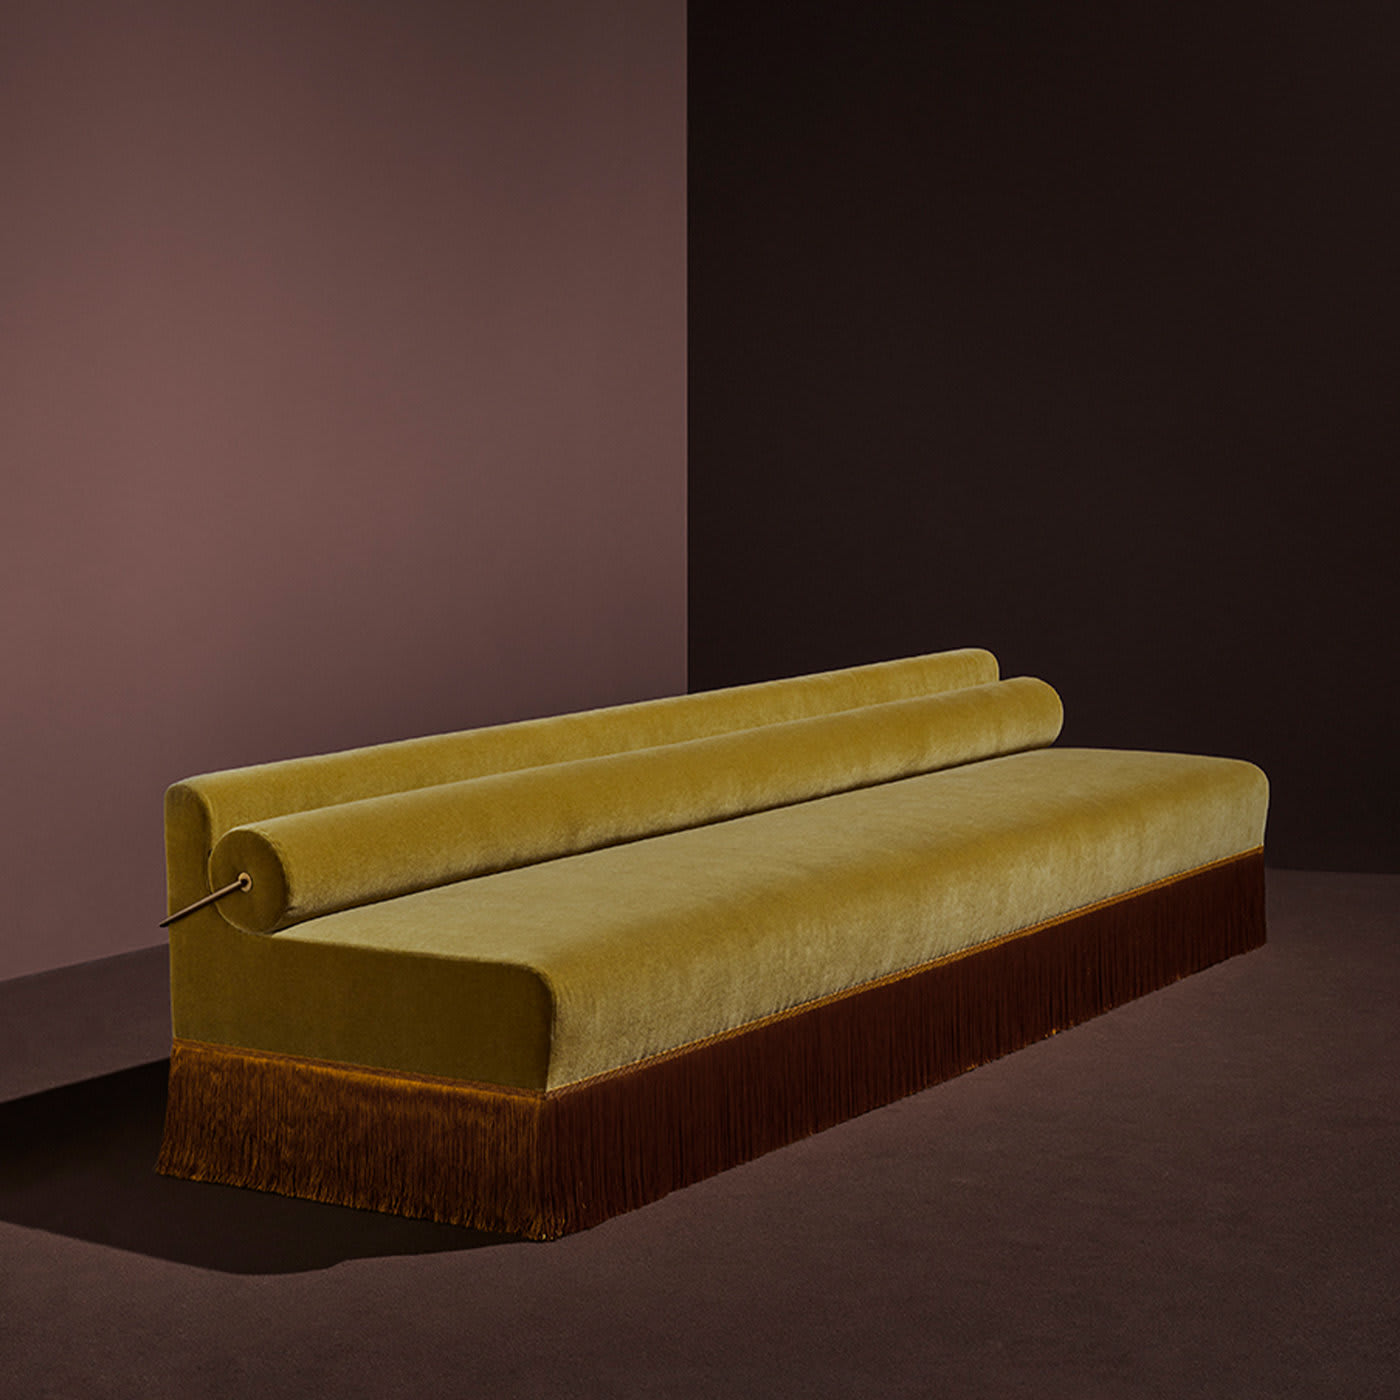 Signora Vintage Yellow Sofa by DimoreStudio - Dimoremilano